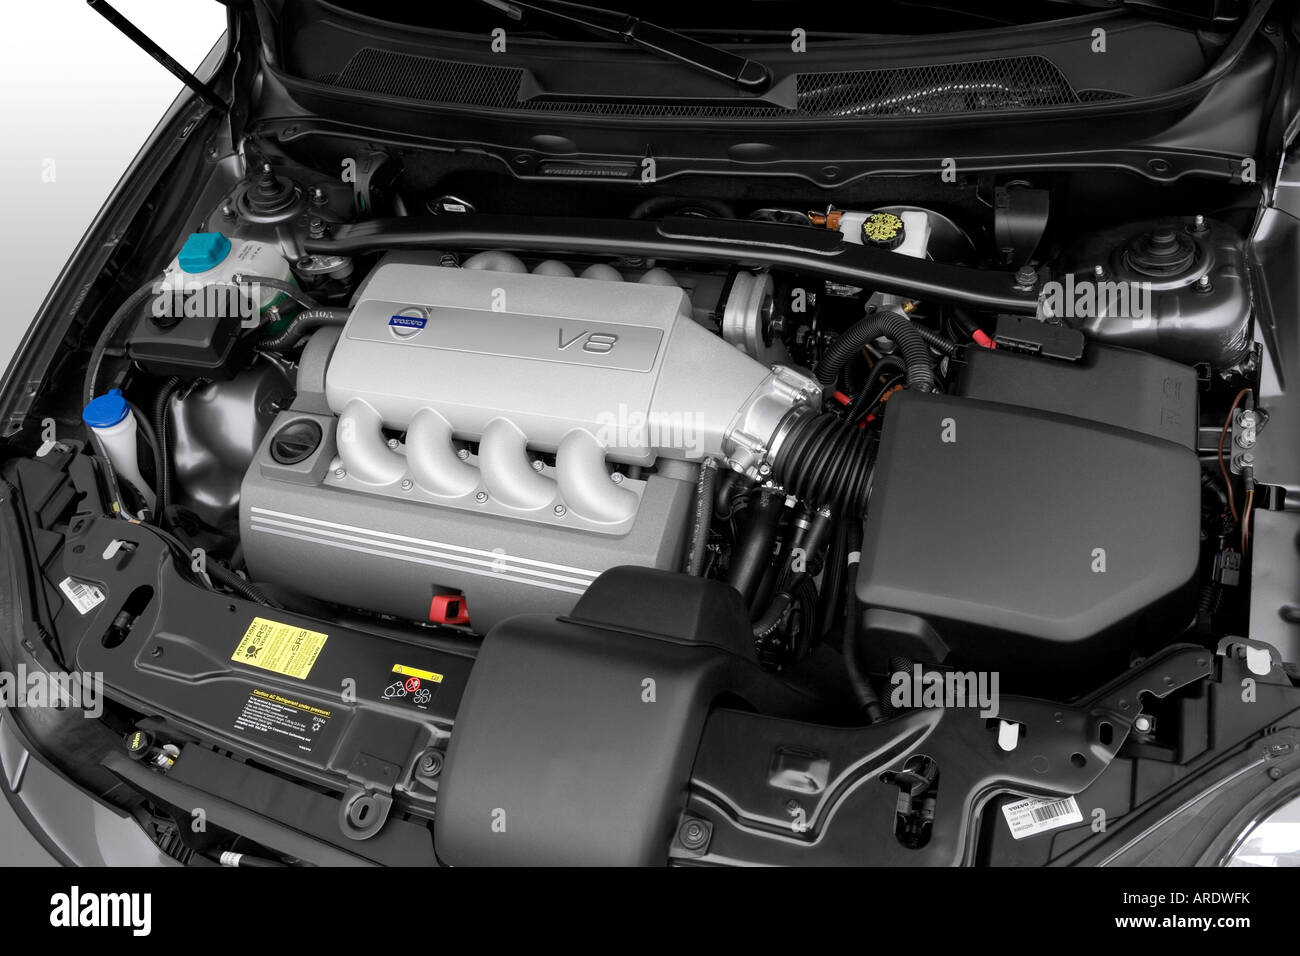 La Volvo XC90 sera équipé d'un moteur V8 haut de gamme - Volvo